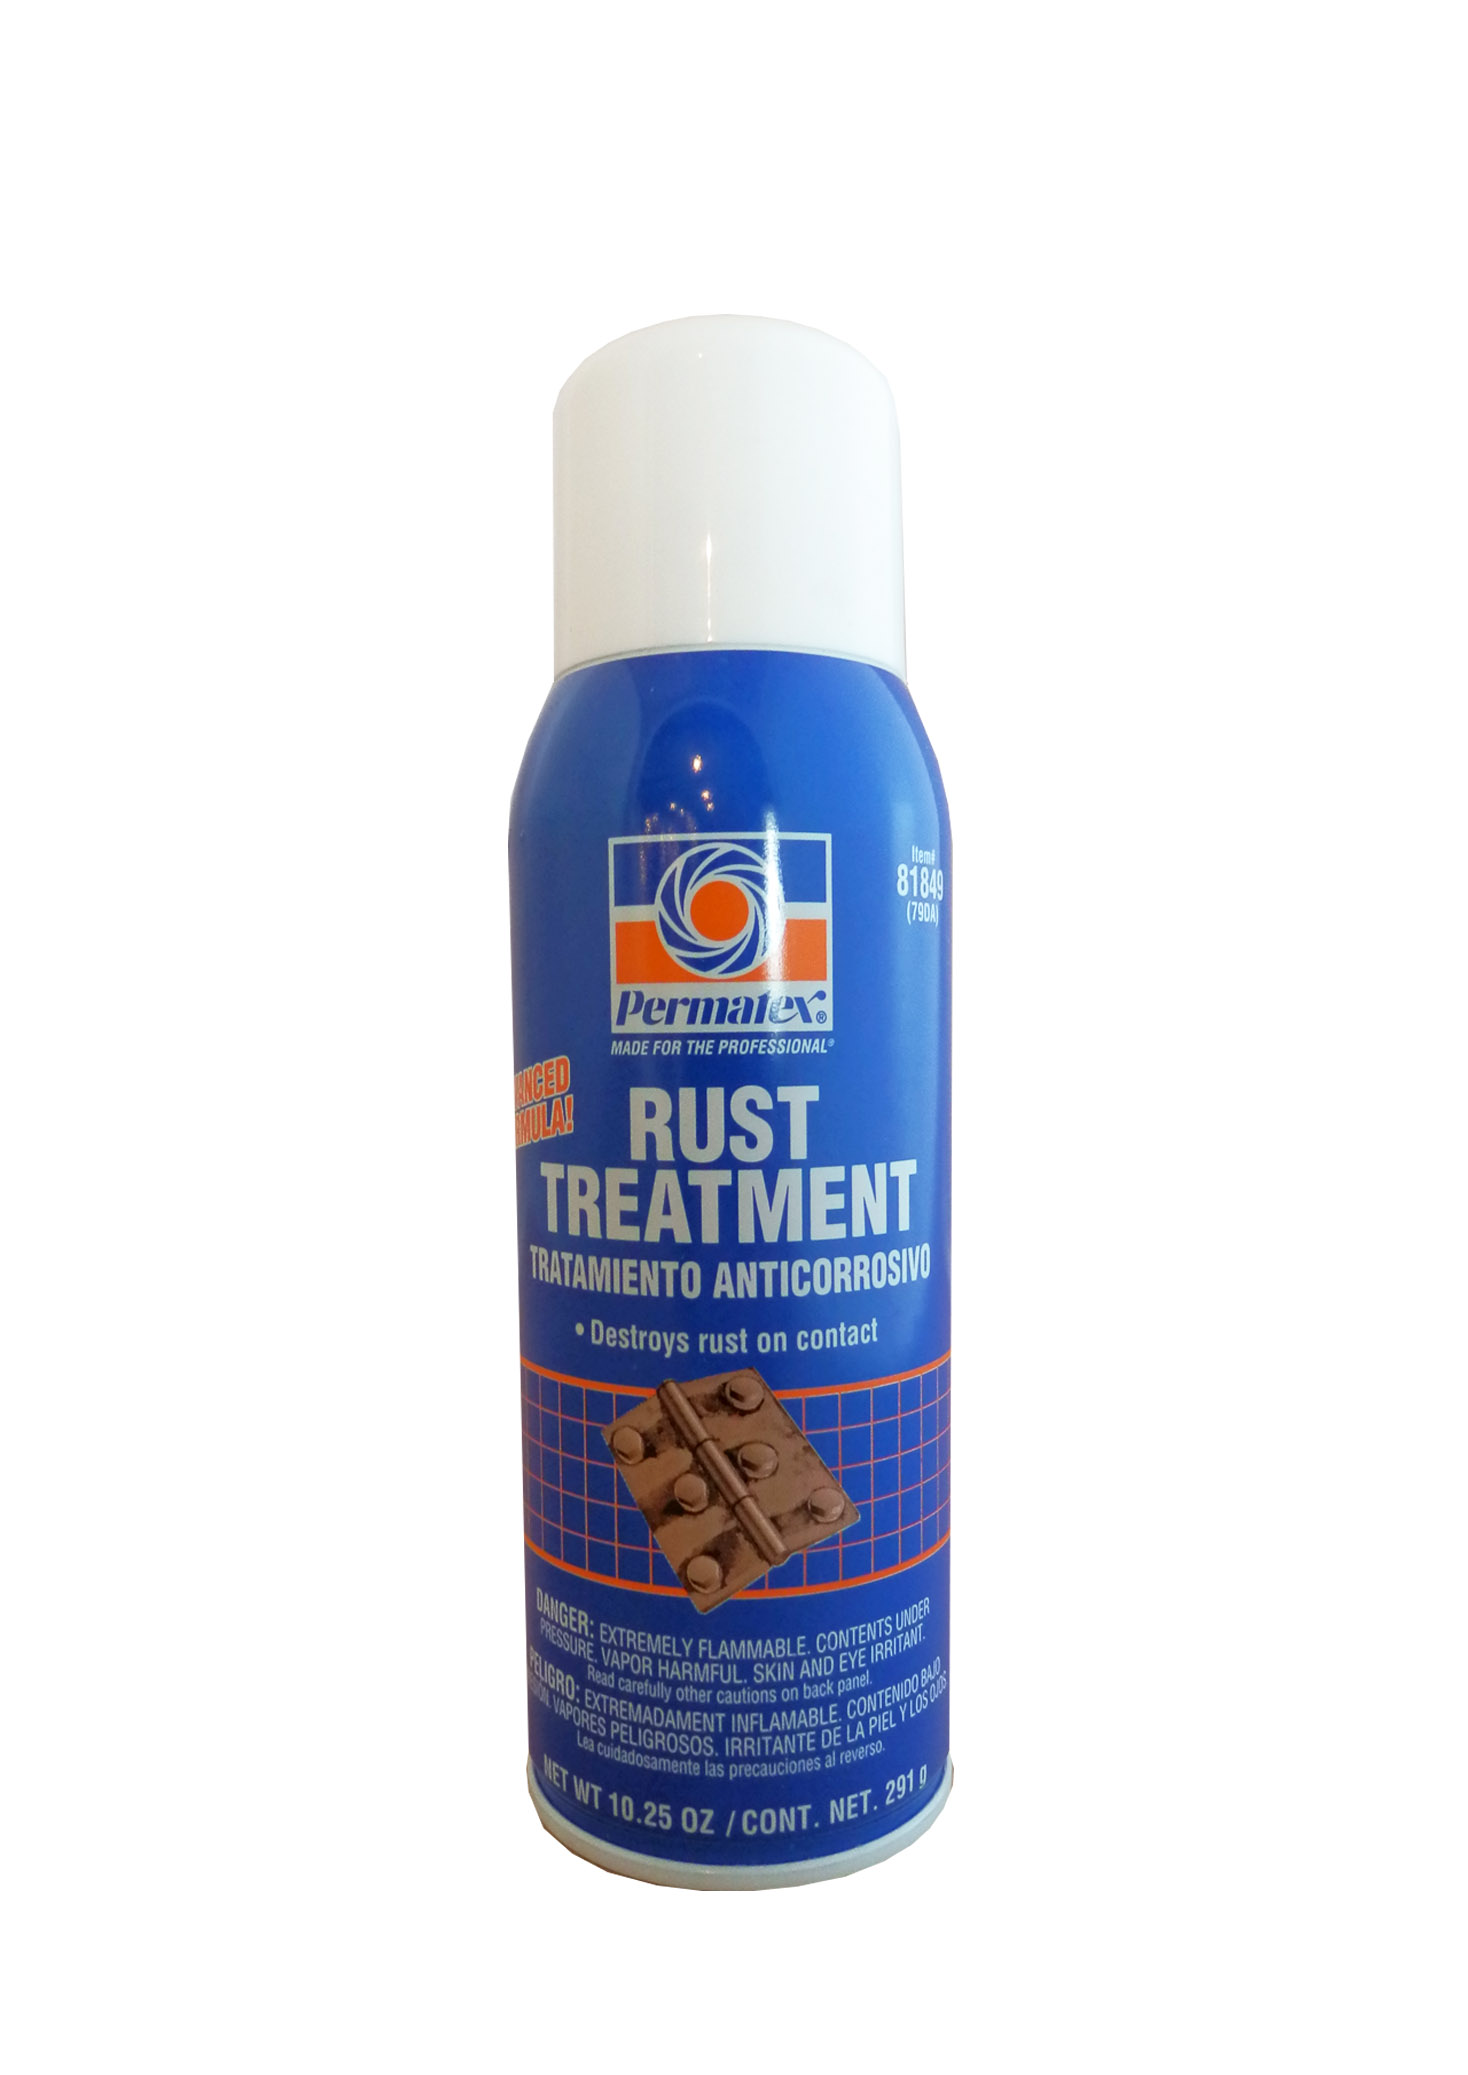 Rust treatment цена фото 88